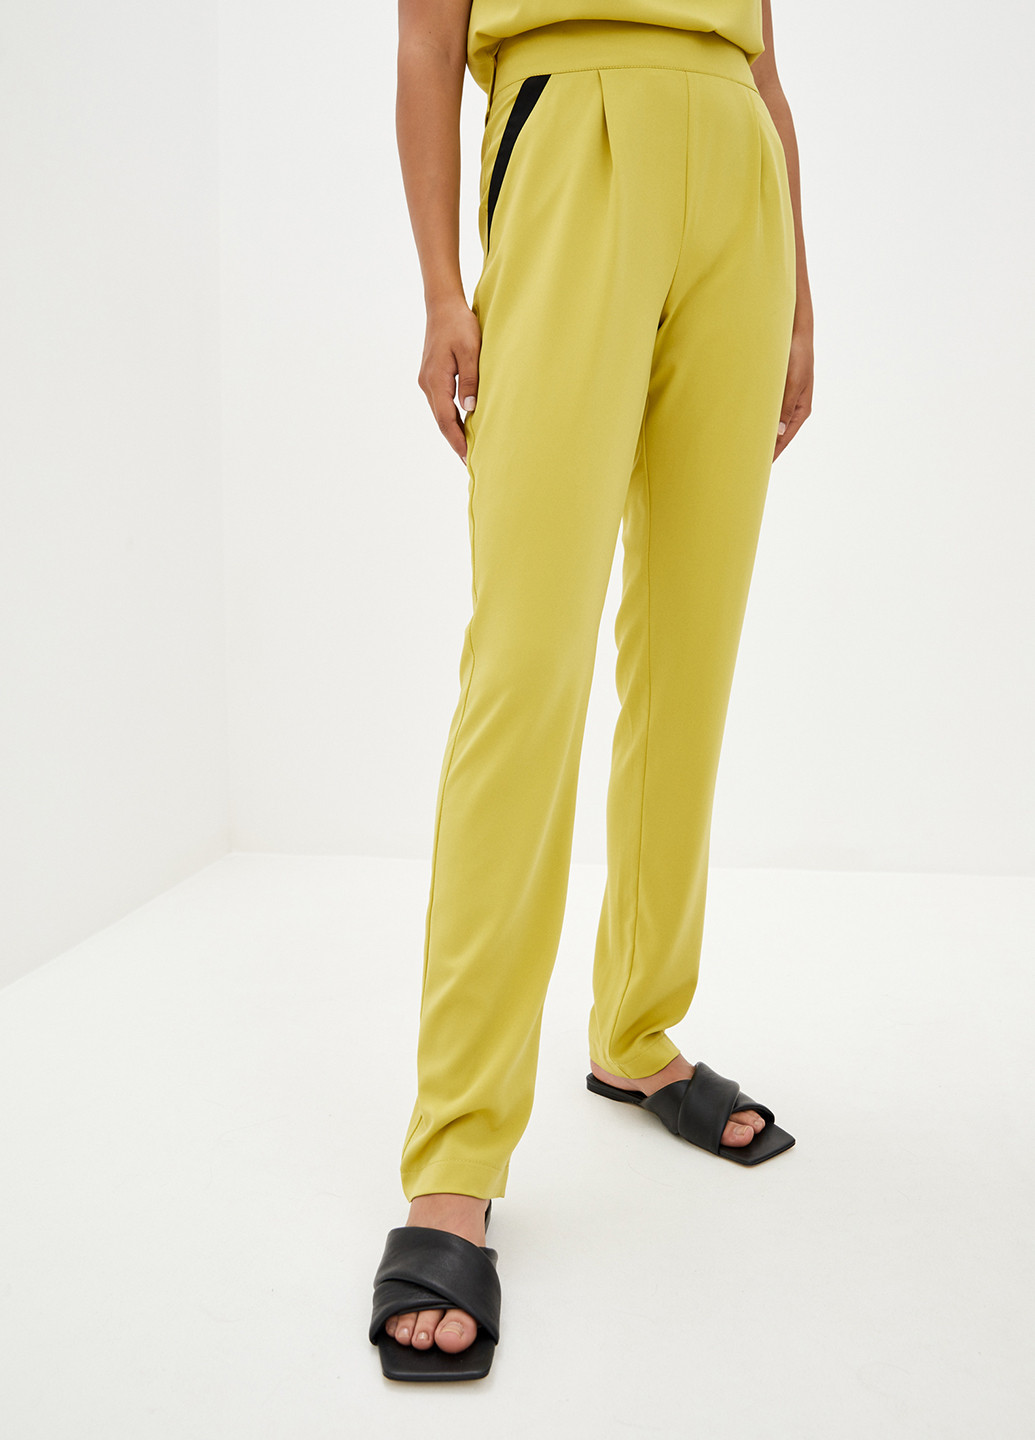 Костюм (блуза, брюки) Luzana брючный однотонный жёлтый кэжуал